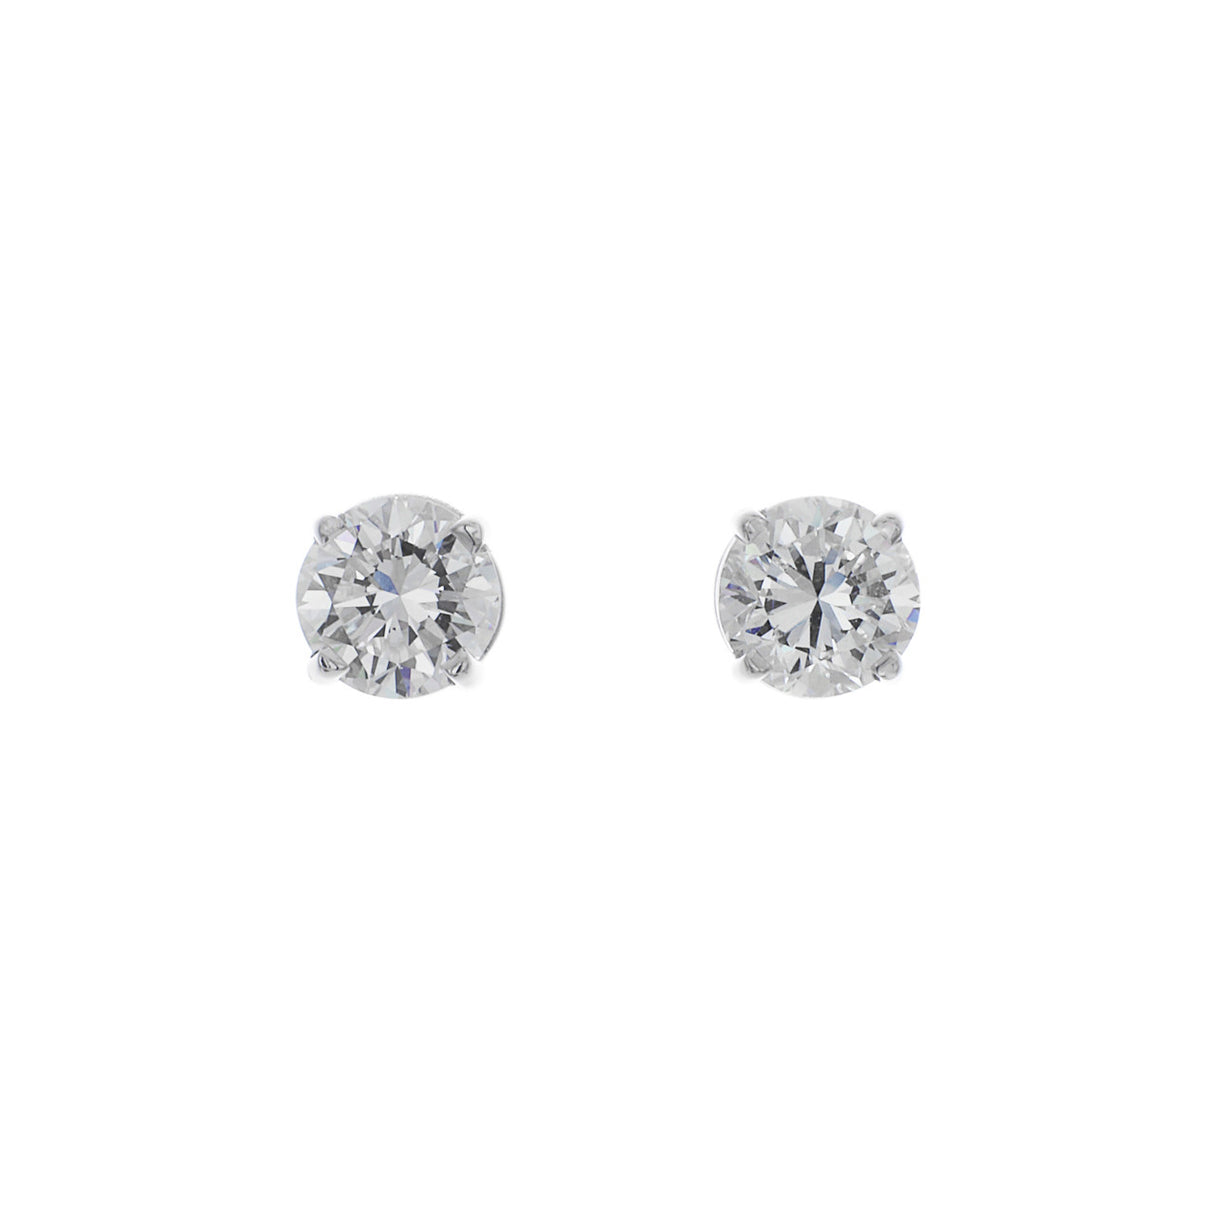 14K White Gold 1.21 Carat Diamond Stud Earrings